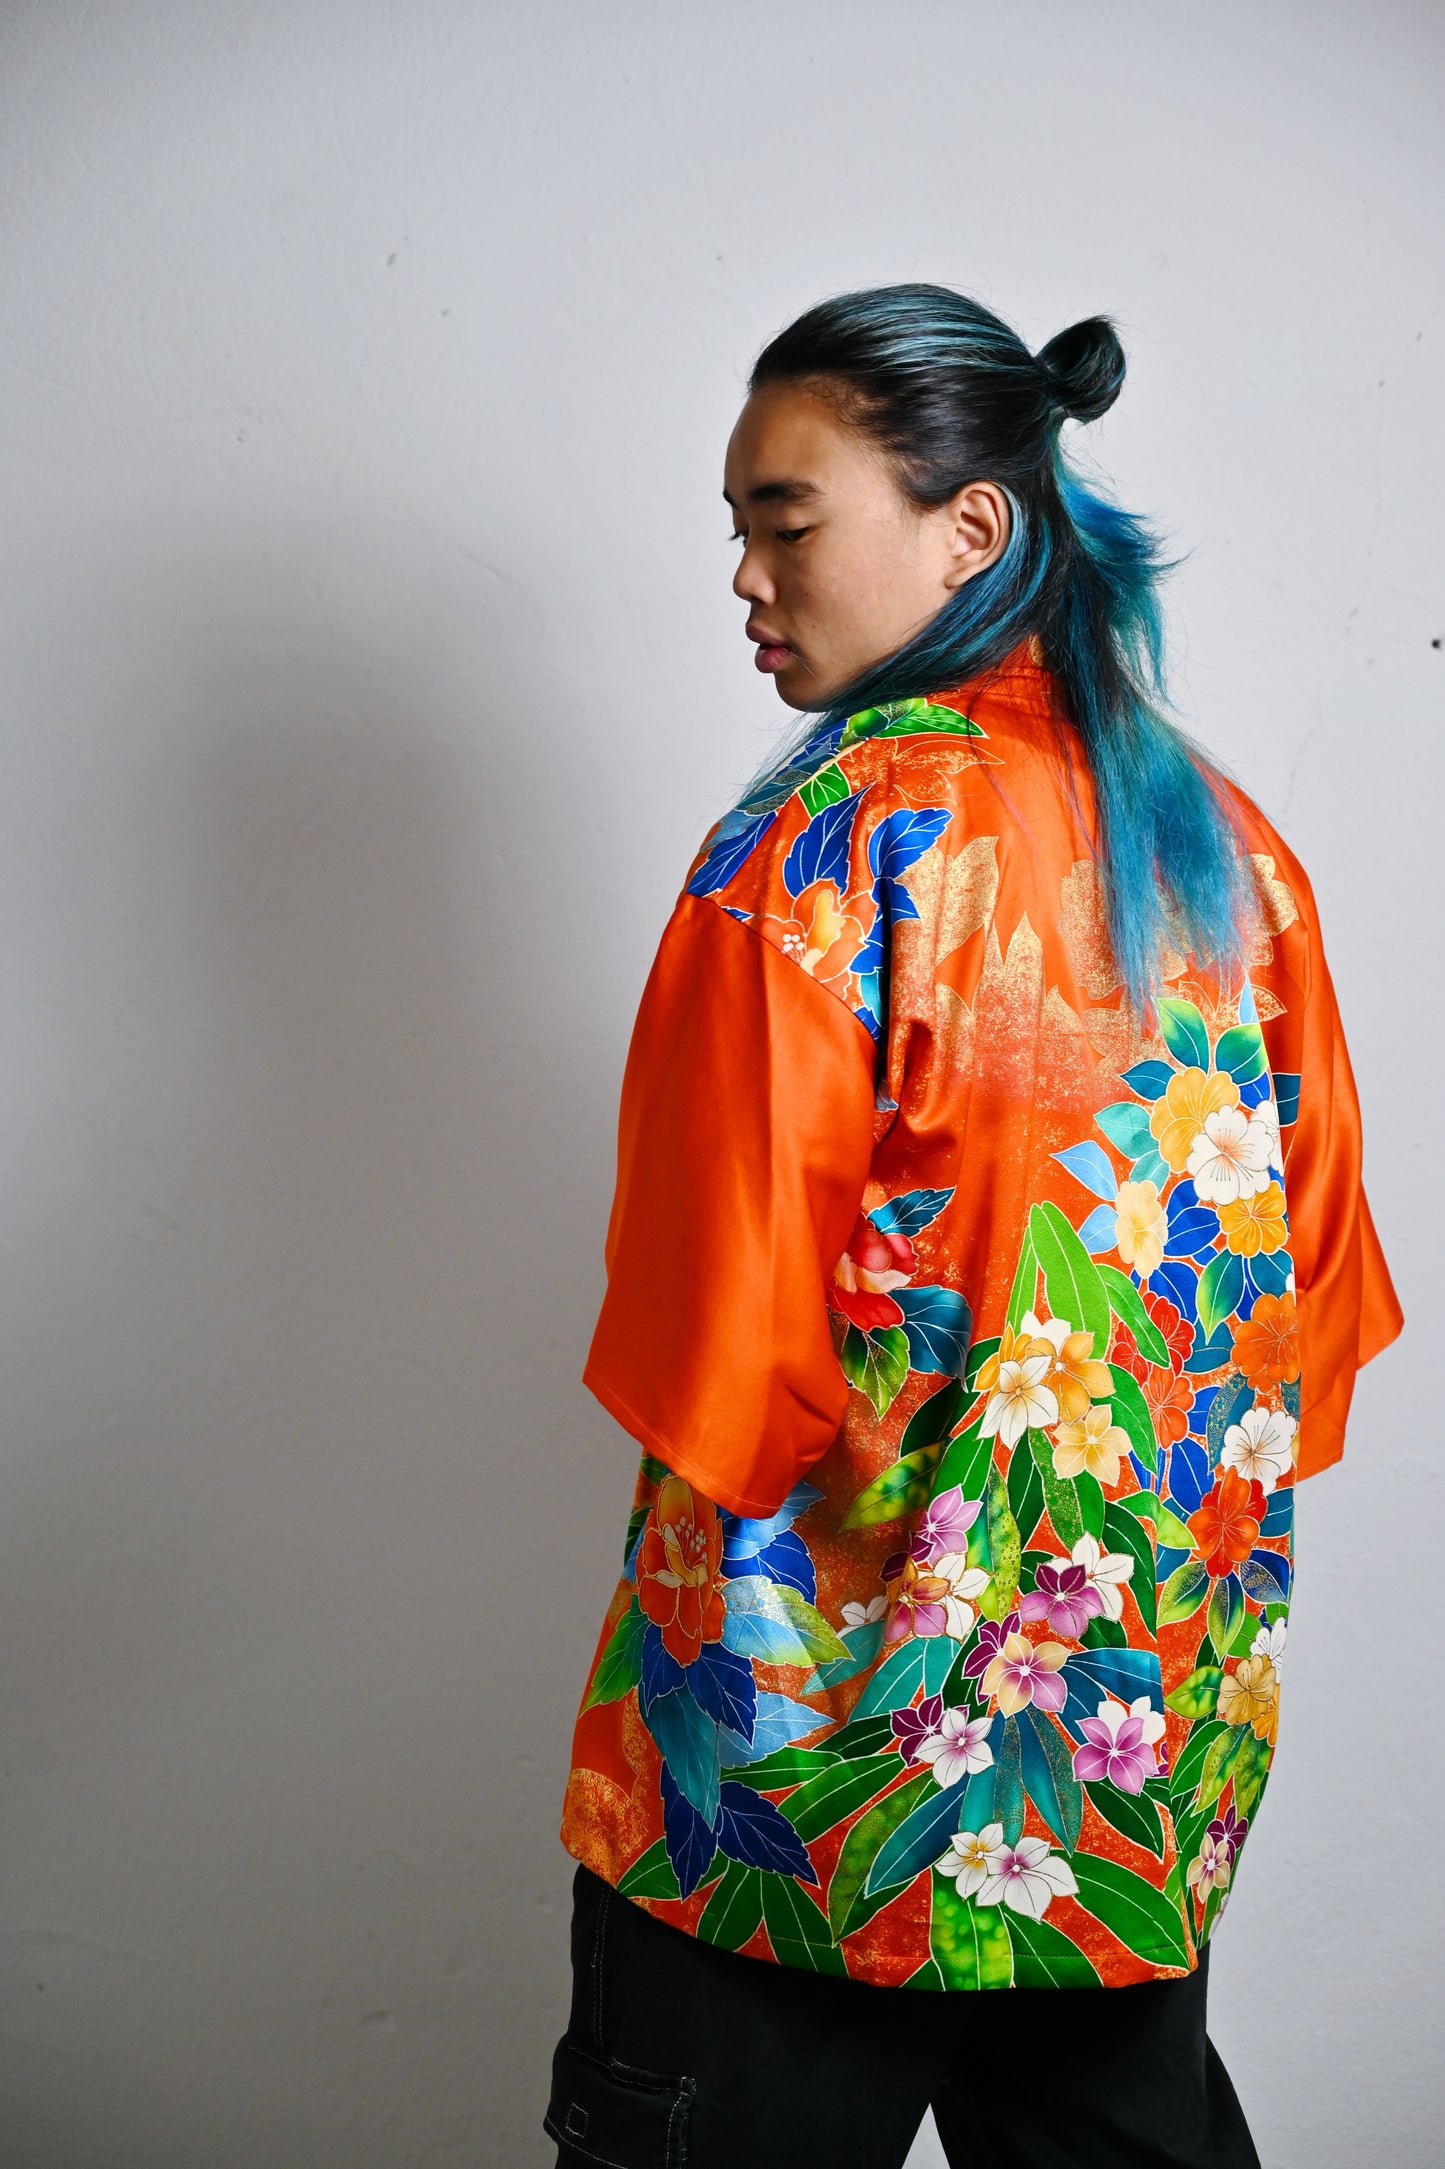 【Orange vif, pivoine】 veste heureuse ＜ Excellent ・ Silk ＞ pour les hommes, pour les femmes, le kimono japonais, les vêtements unisexais japonais, l'unisexe, les cadeaux japonais, les designs originaux